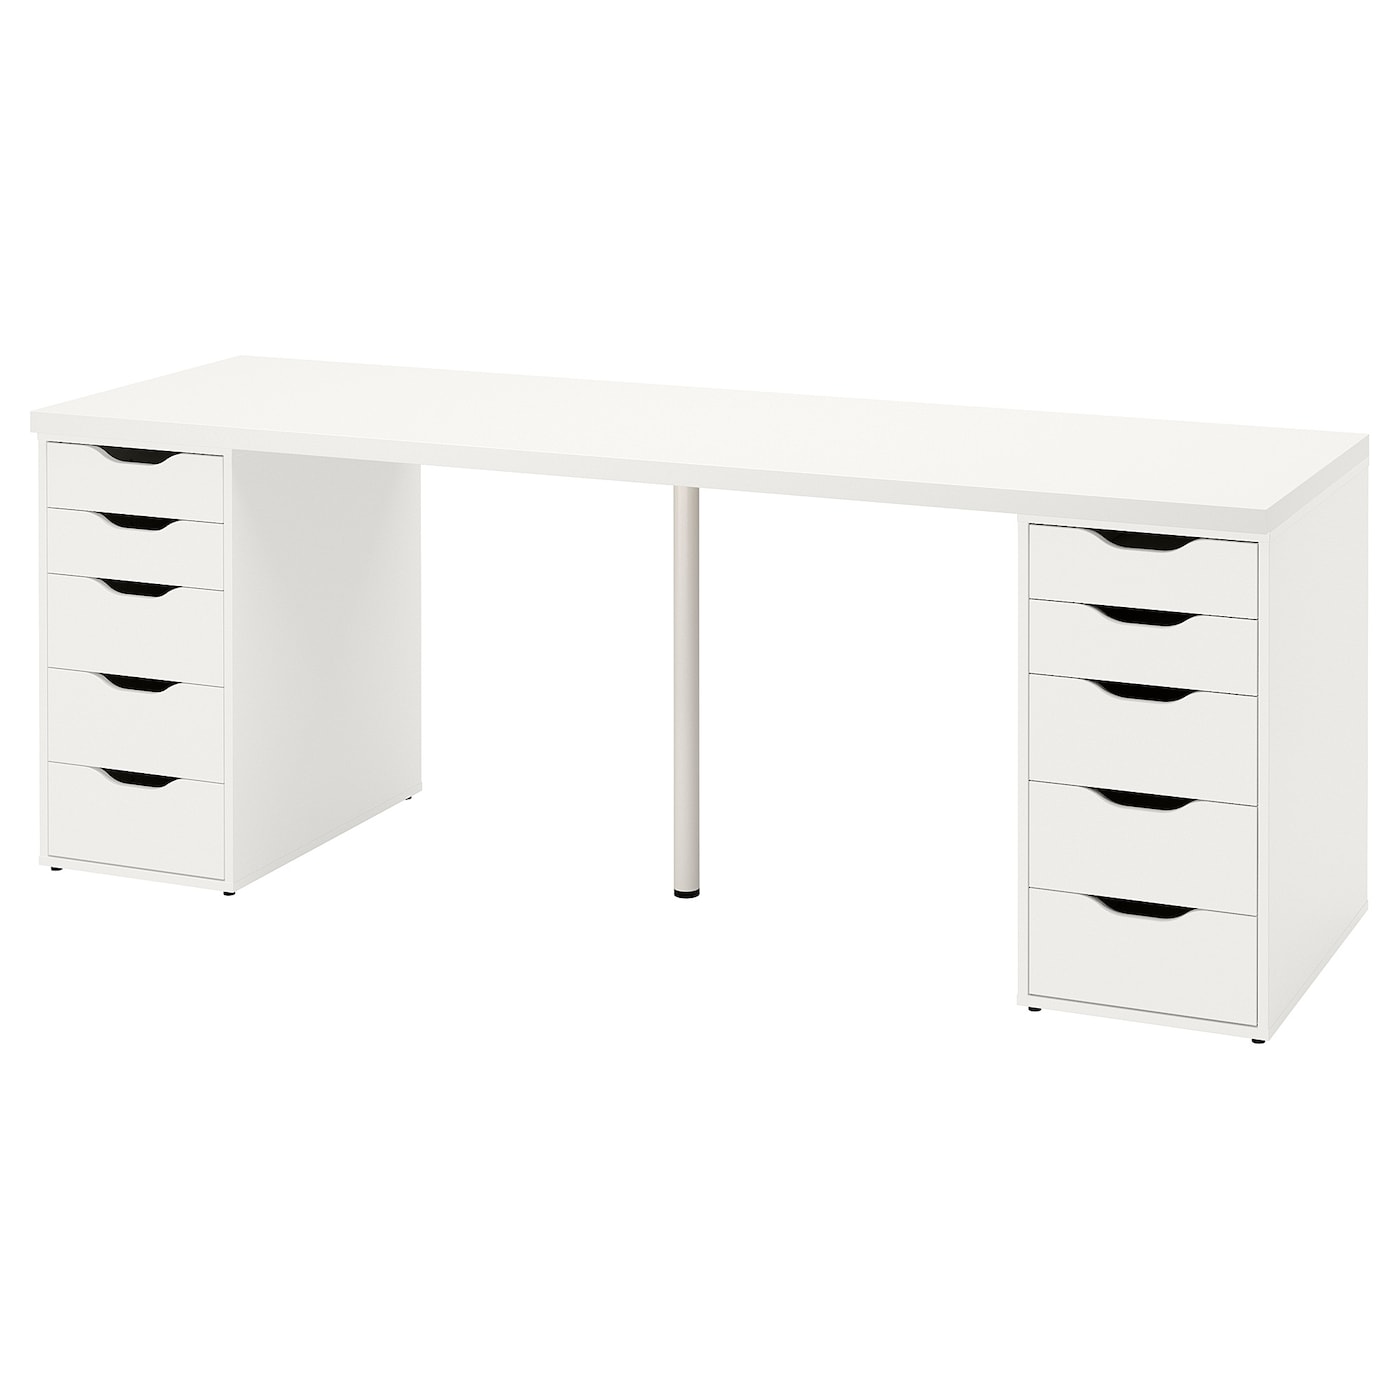 Письменный стол с ящиками - IKEA LAGKAPTEN/ALEX, 200x60 см, белый, АЛЕКС/ЛАГКАПТЕН ИКЕА